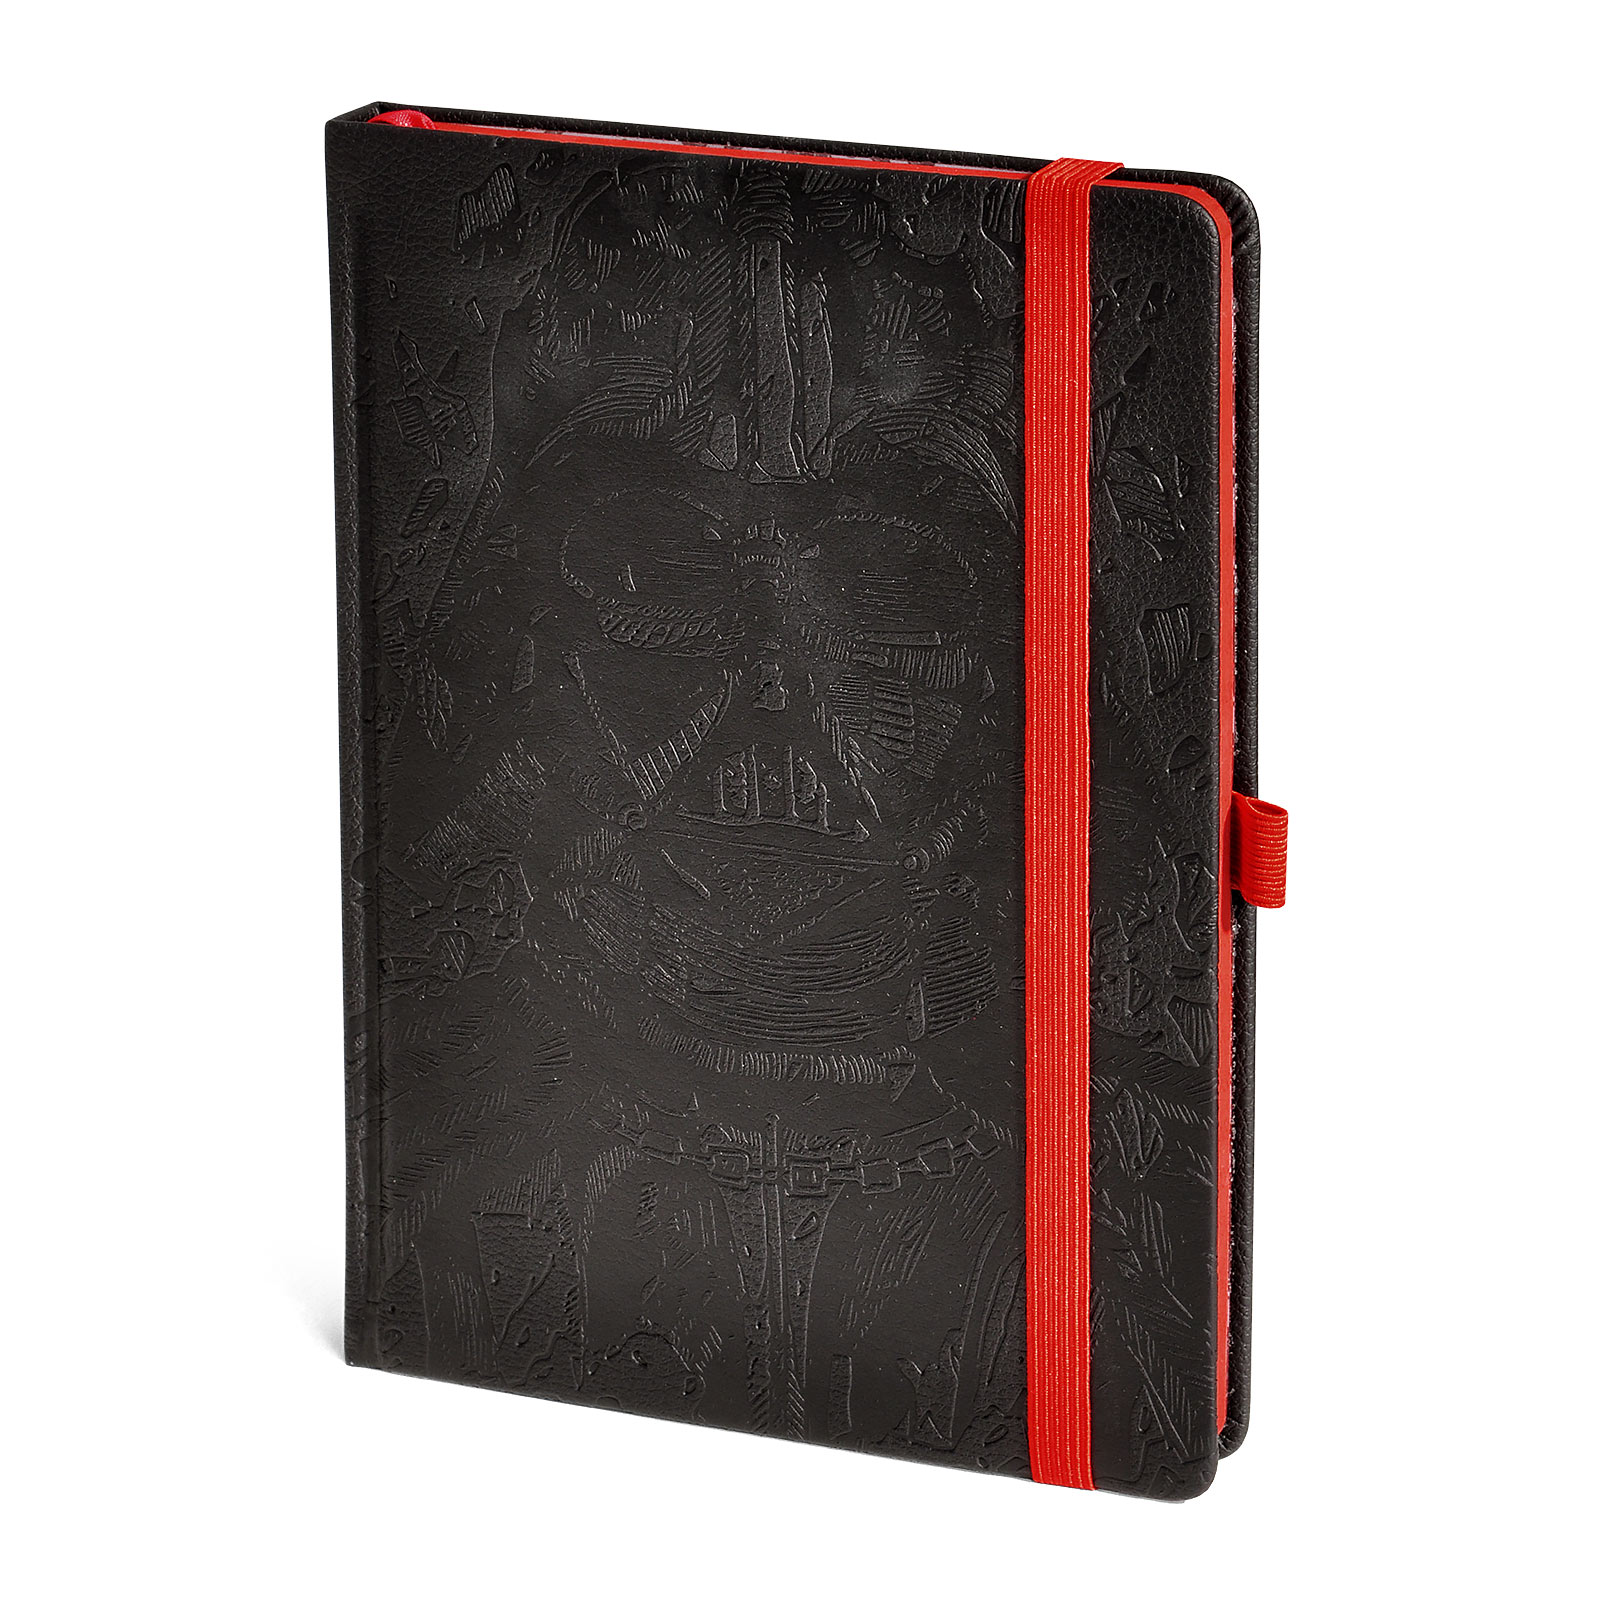 Star Wars - Darth Vader Art Premium Notebook A5